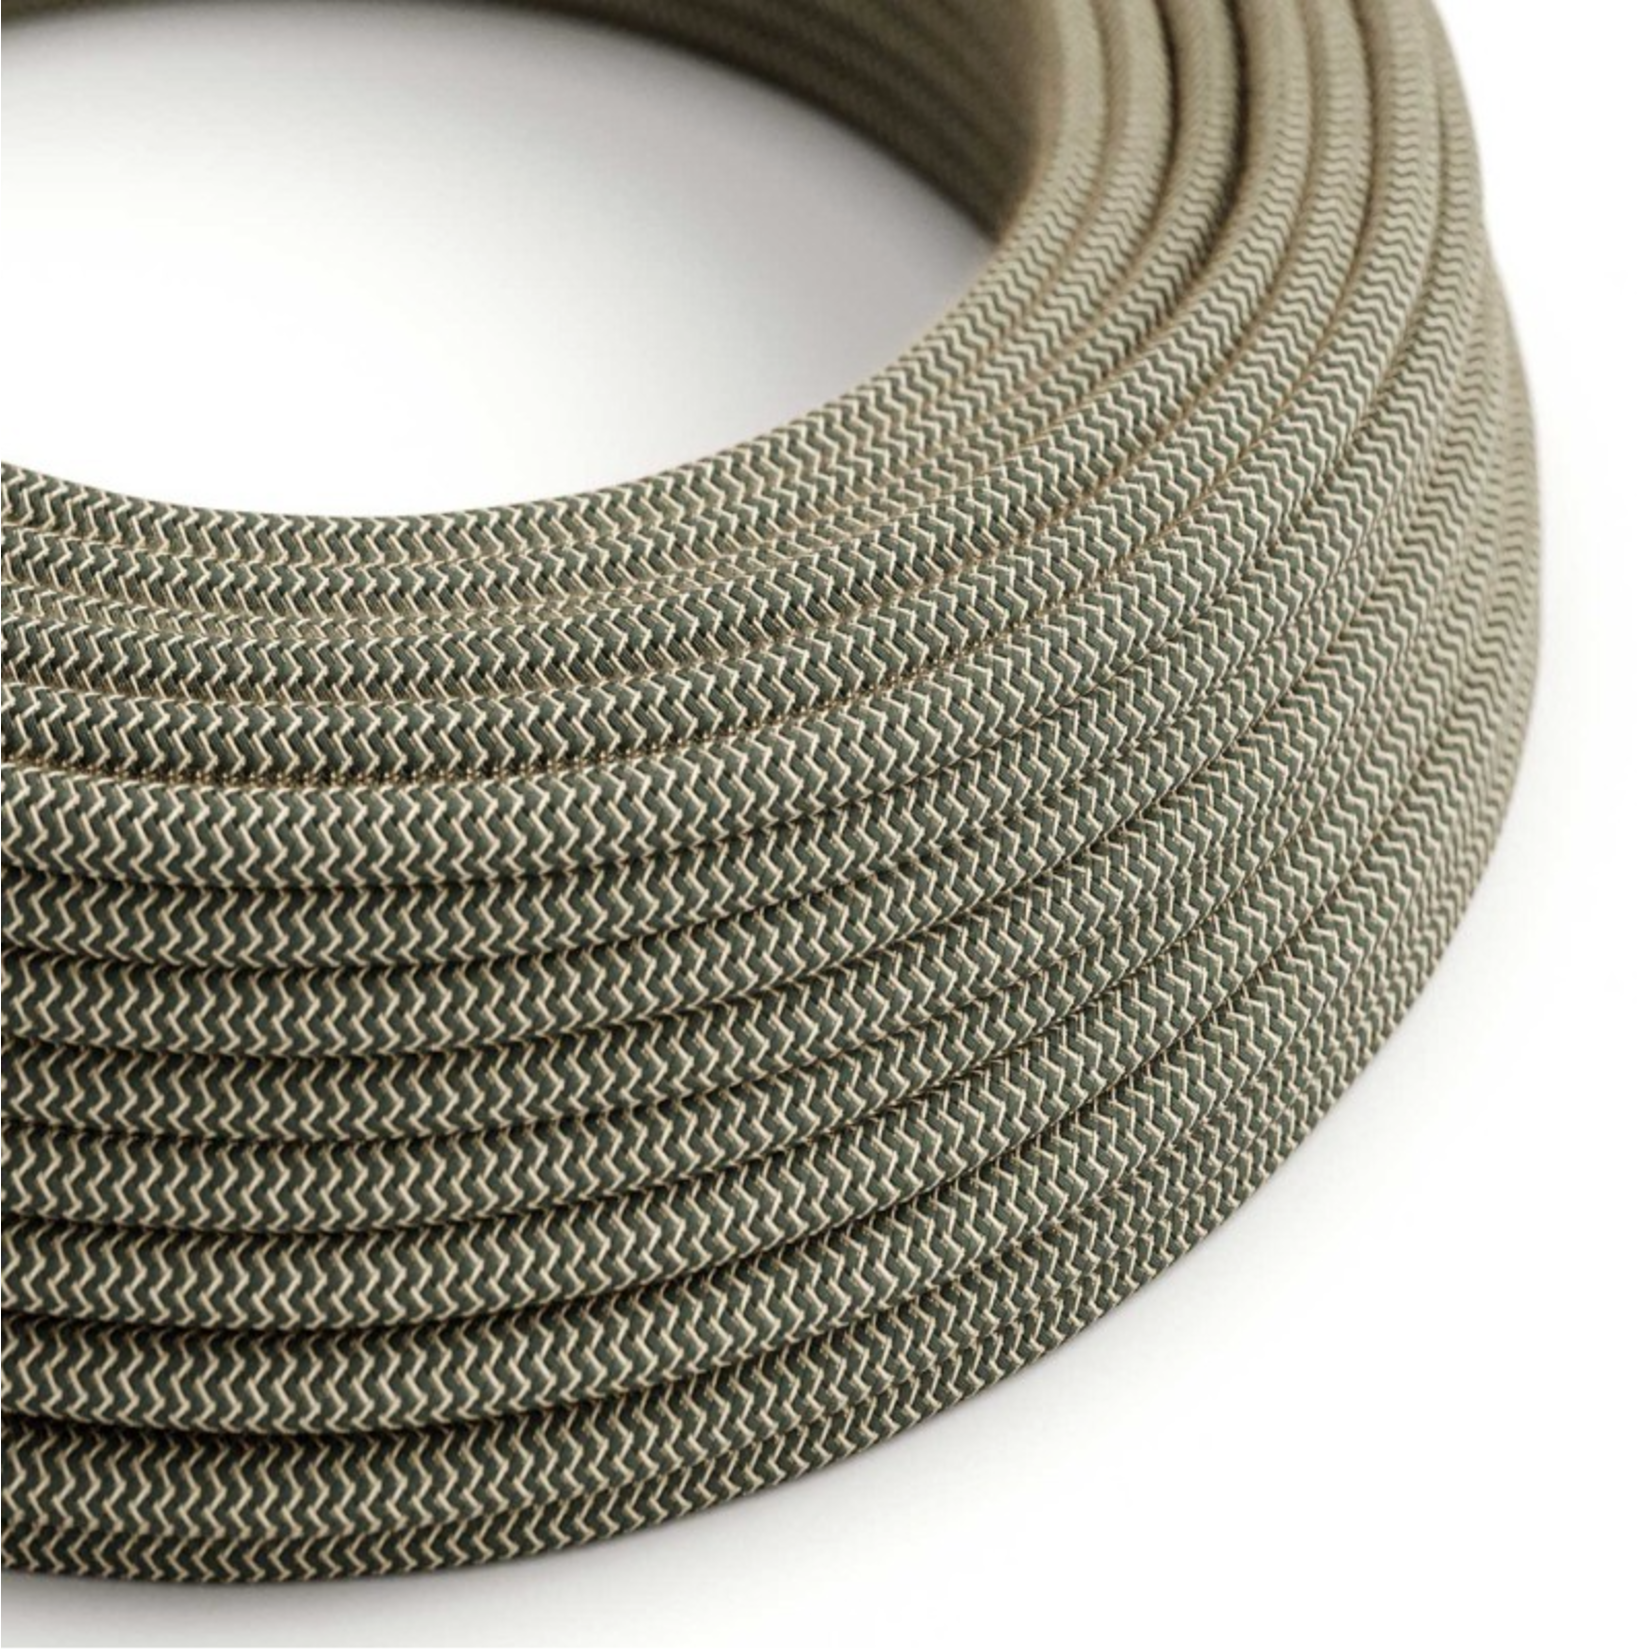 CCIT Per Metre - Round electric cable  3 core Flex Grey and White cotton Chevron : 0.75 Diameter